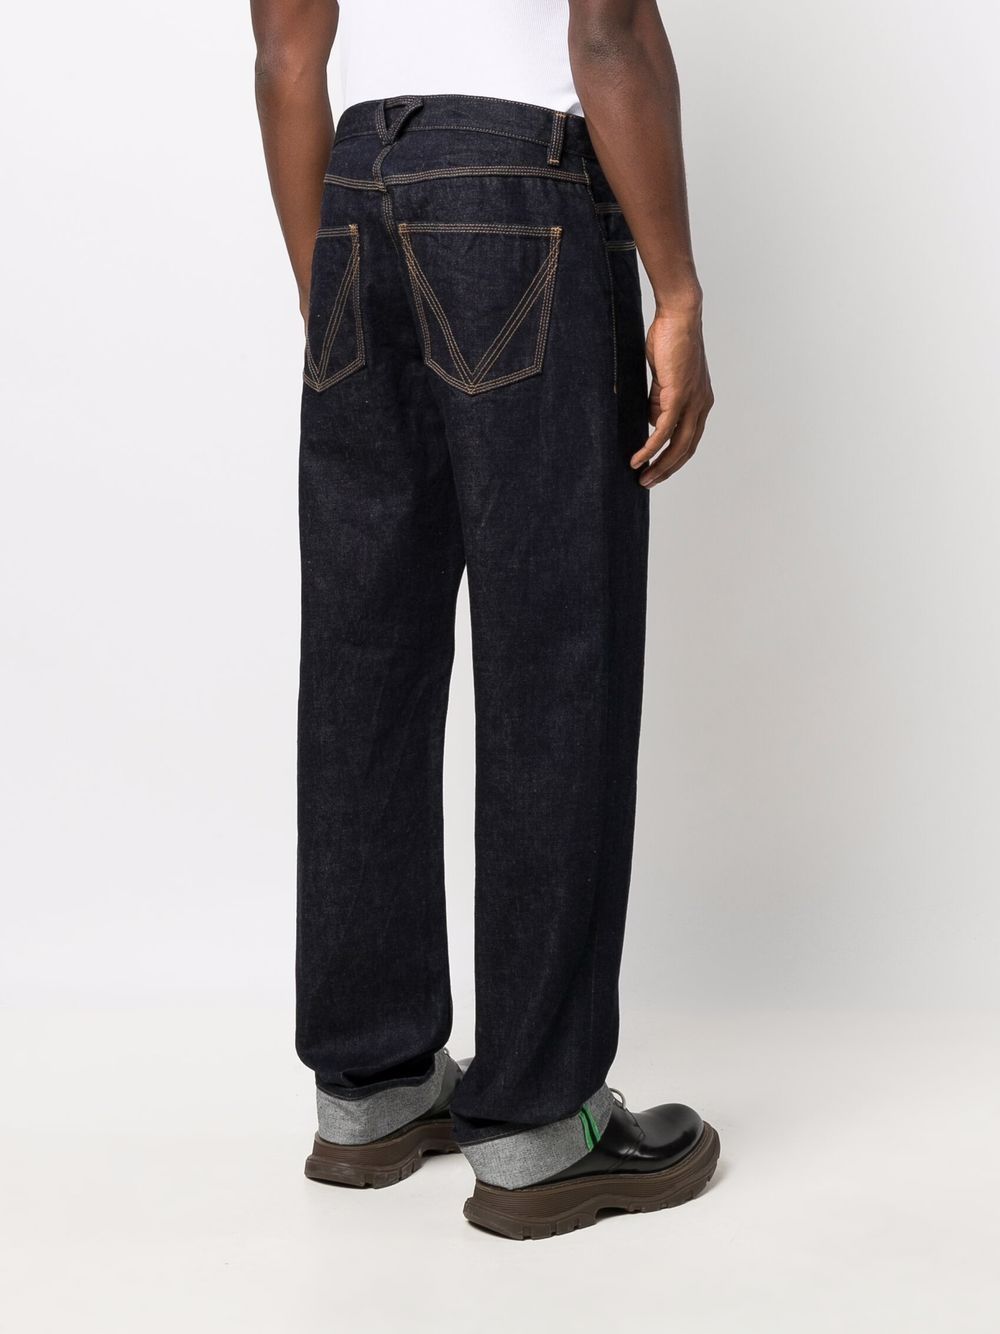 фото Bottega veneta прямые джинсы средней посадки